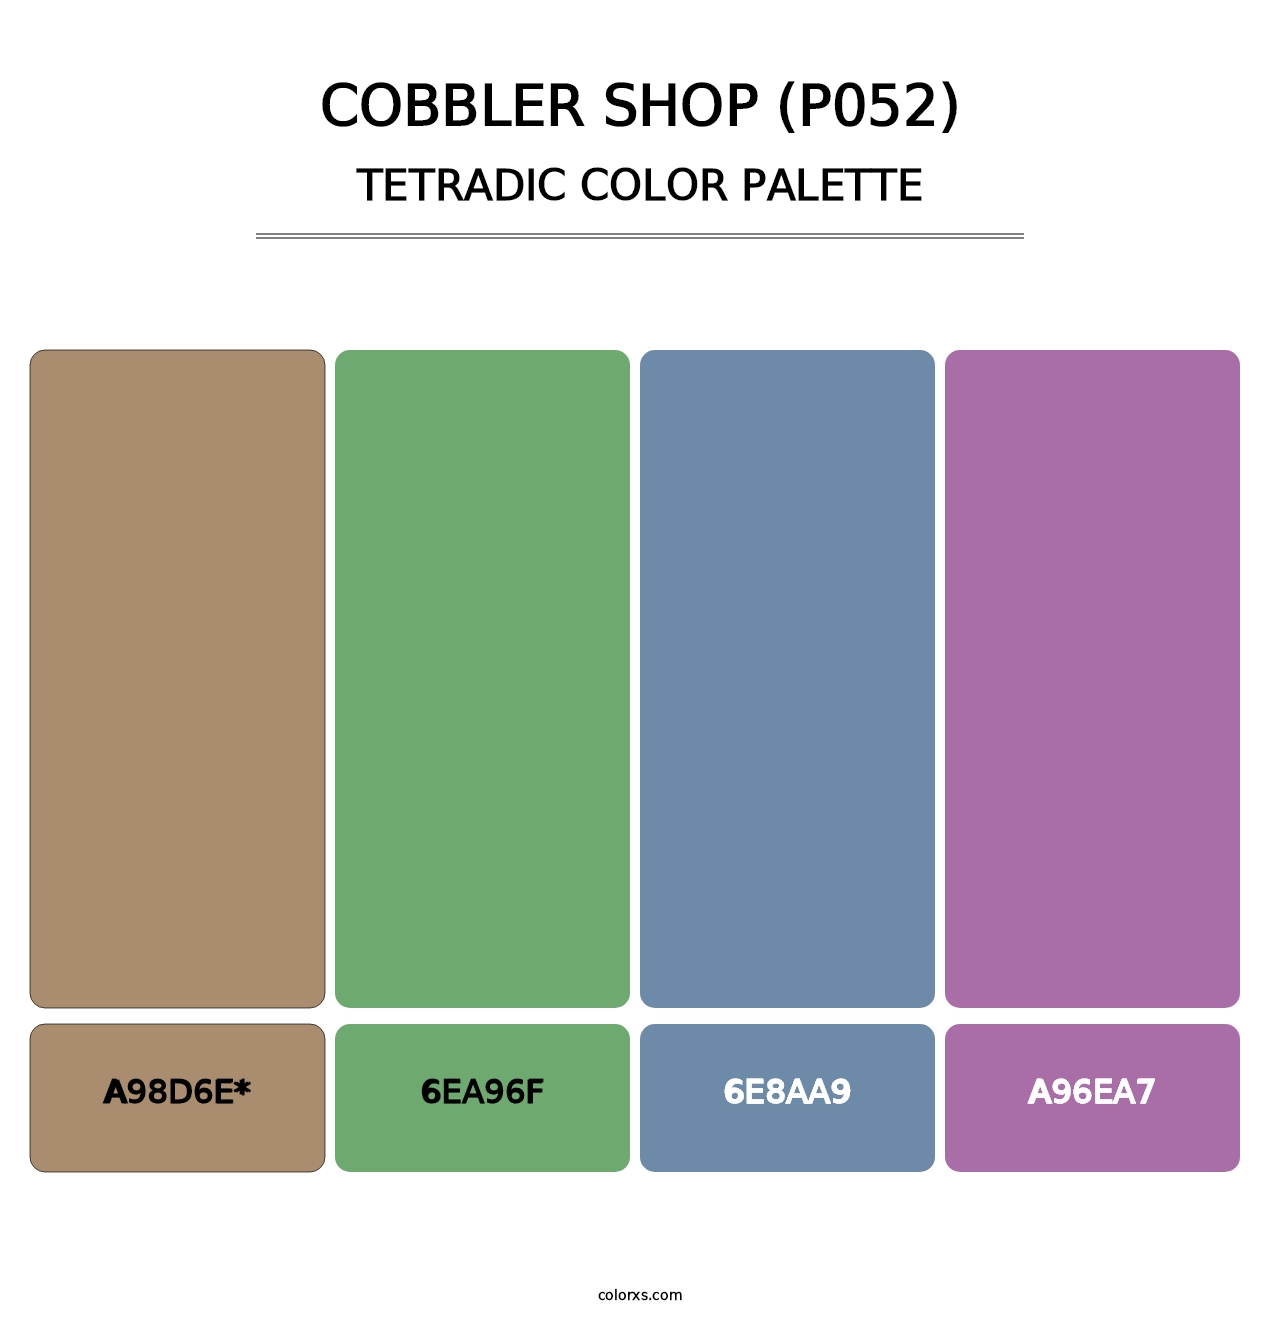 Cobbler Shop (P052) - Tetradic Color Palette